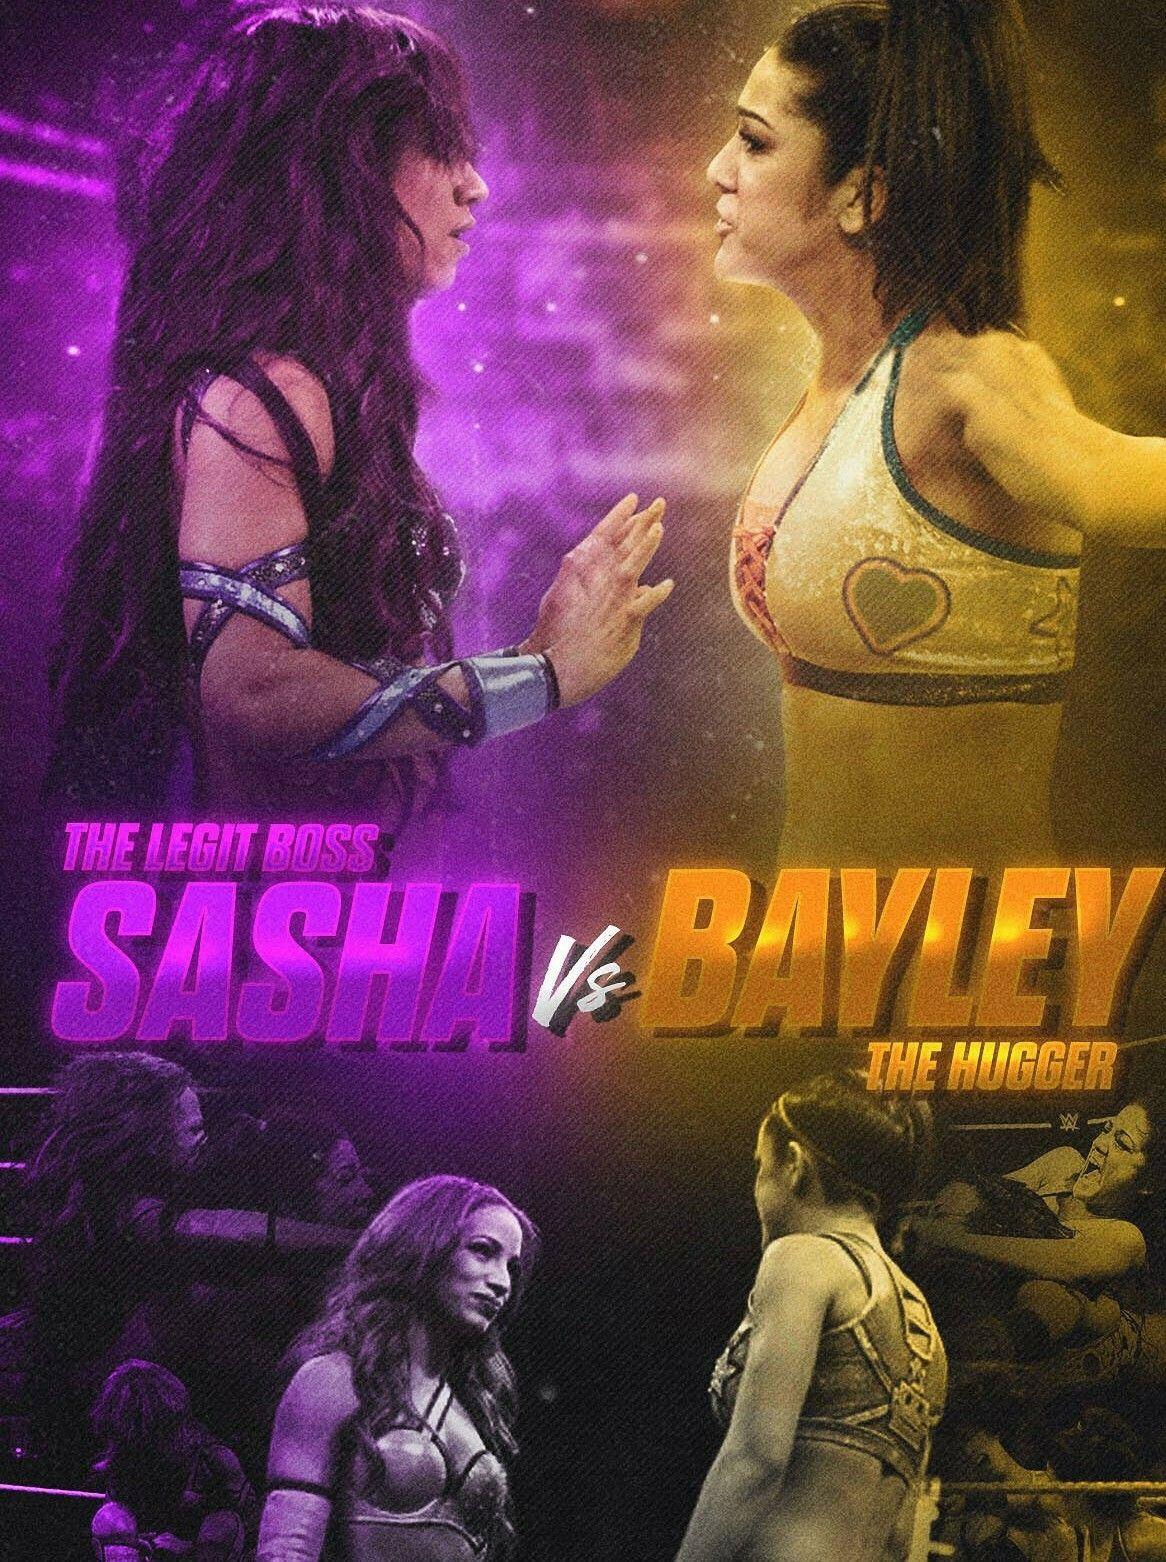 Sasha Banks vs Bayley. Wwe sasha banks, Bailey wwe, Wwe